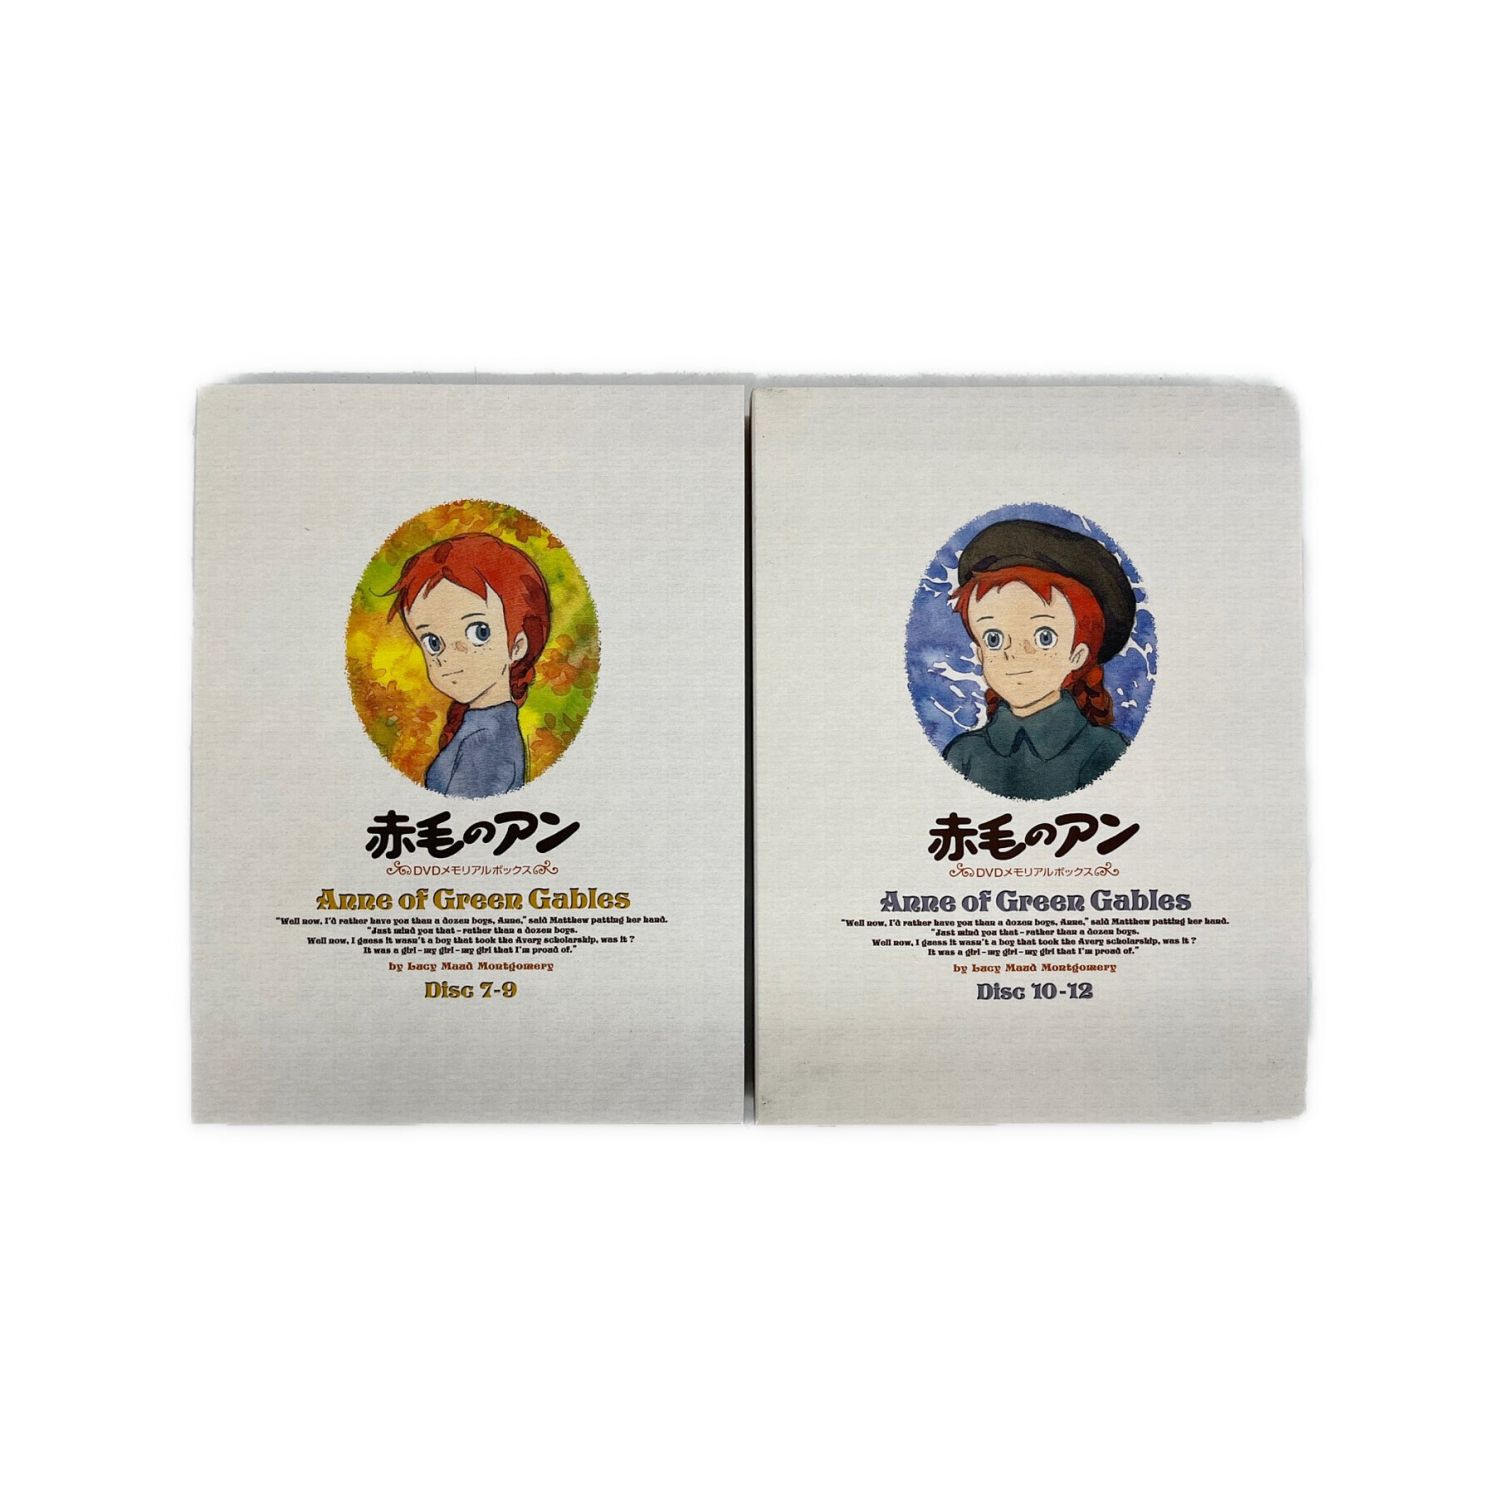 赤毛のアン DVDメモリアルボックス (再プレス) 6g7v4d0